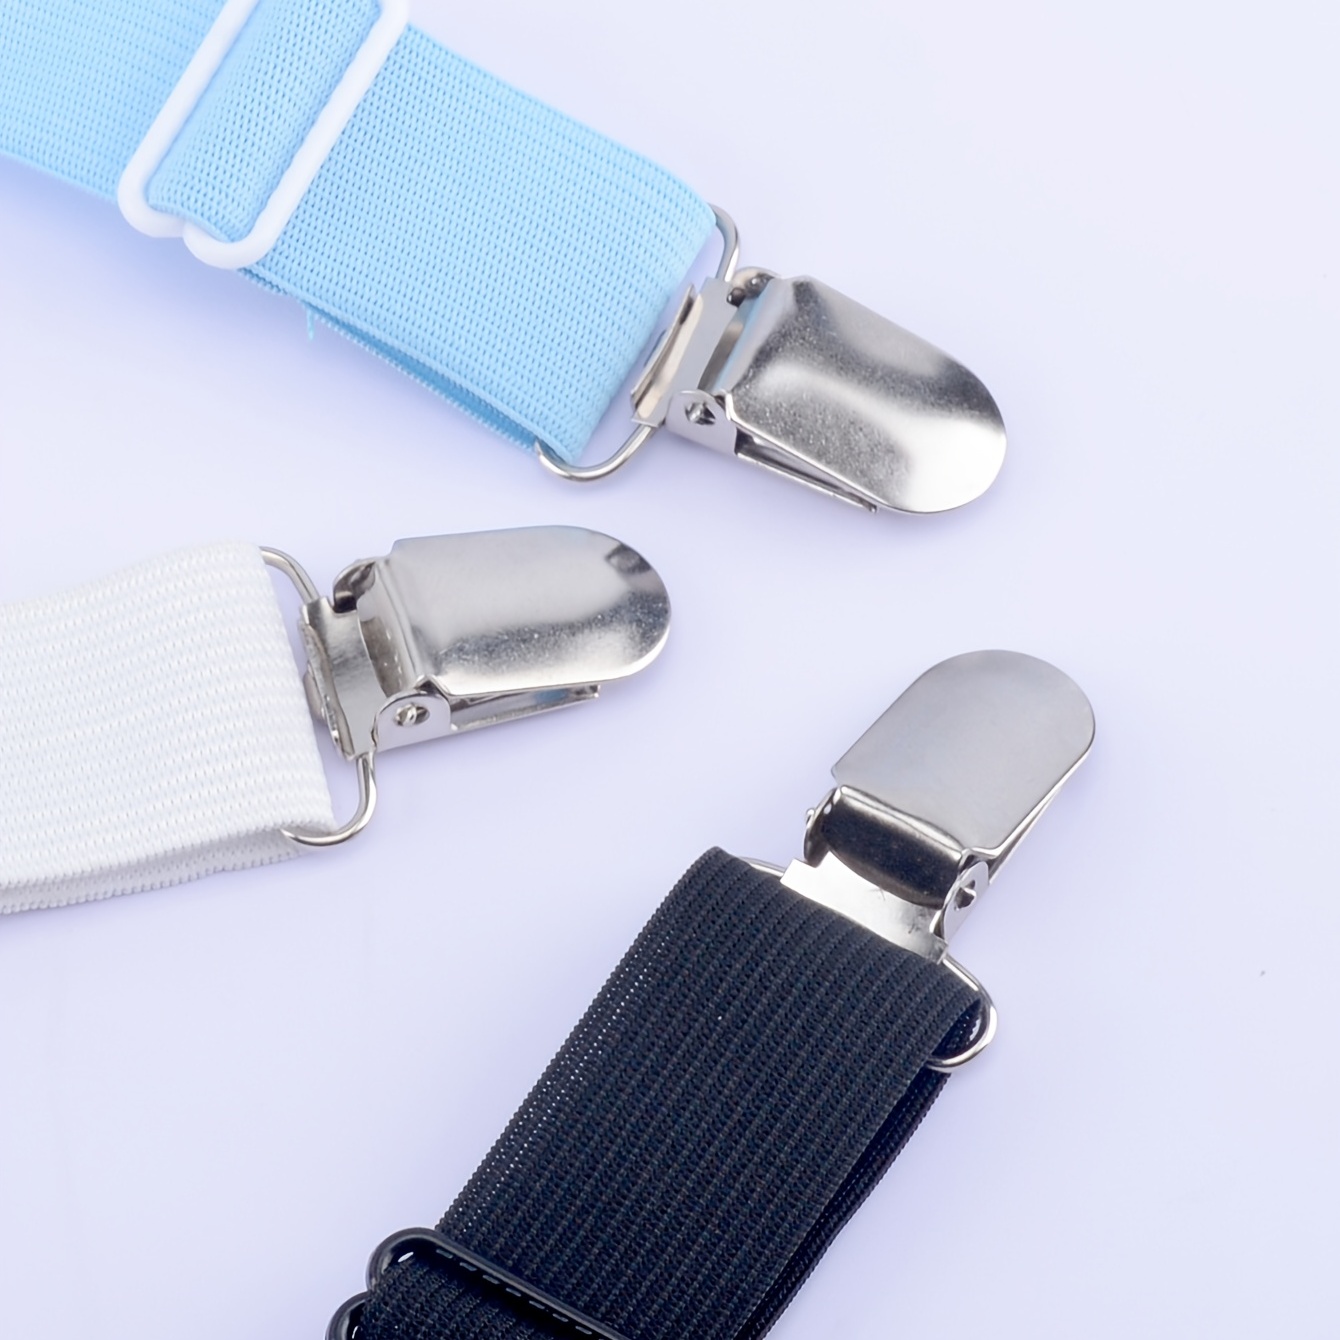 Adjustable Elastic Suspenders - Sheet Suspenders